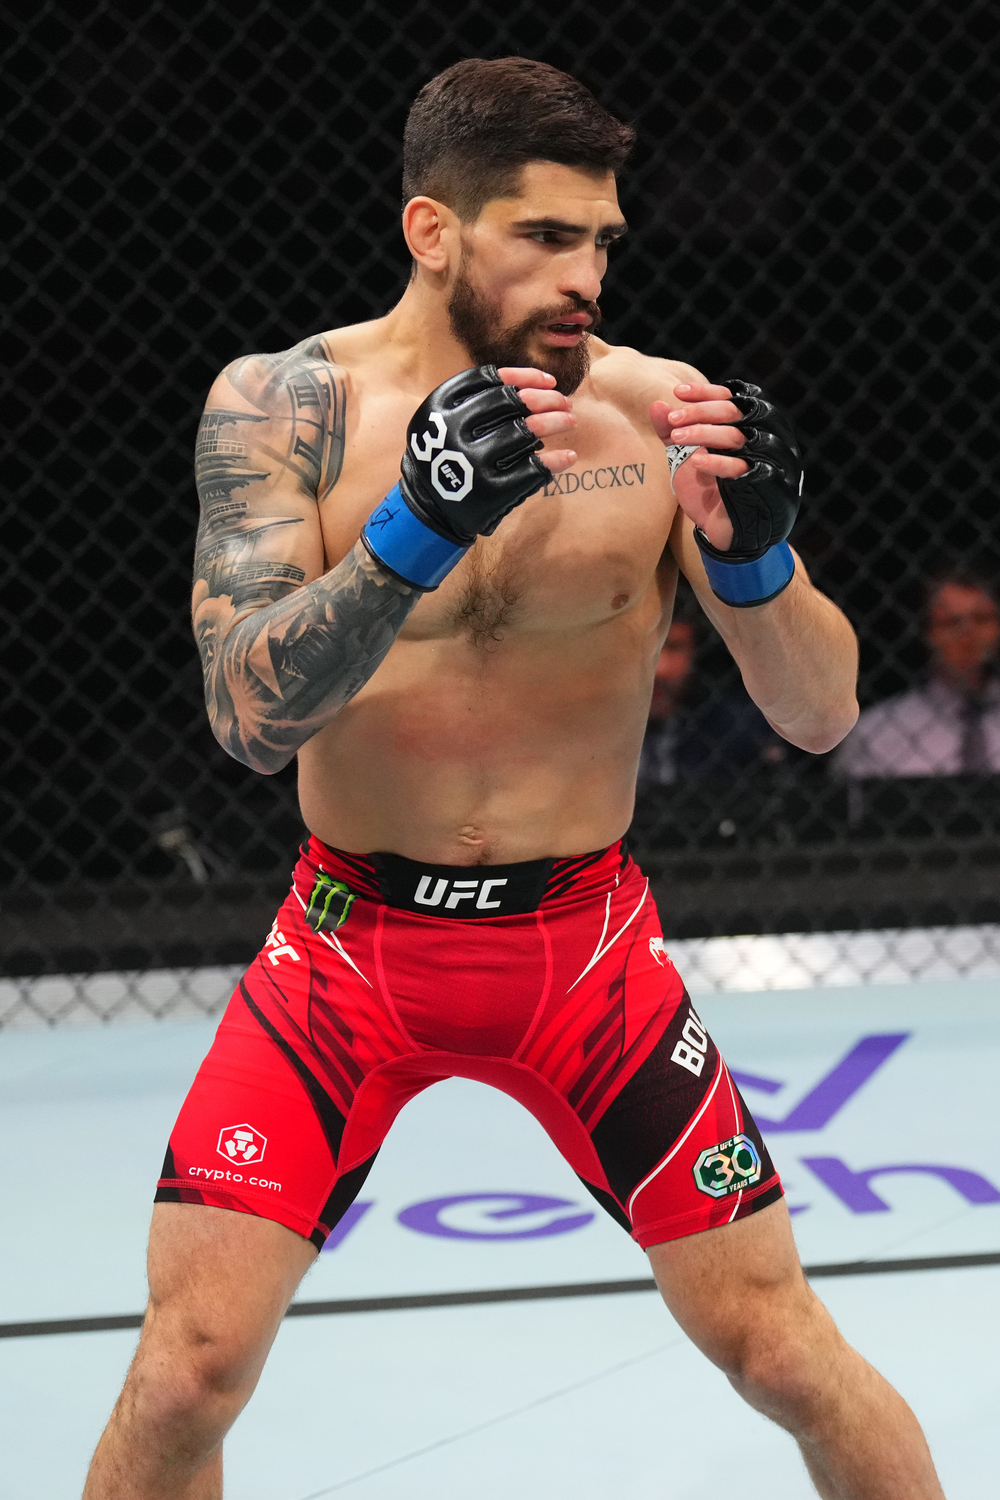 Monster Energy’s Gaston Bolanos Defeats Aaron Phillips at UFC Fight Night Kansas City